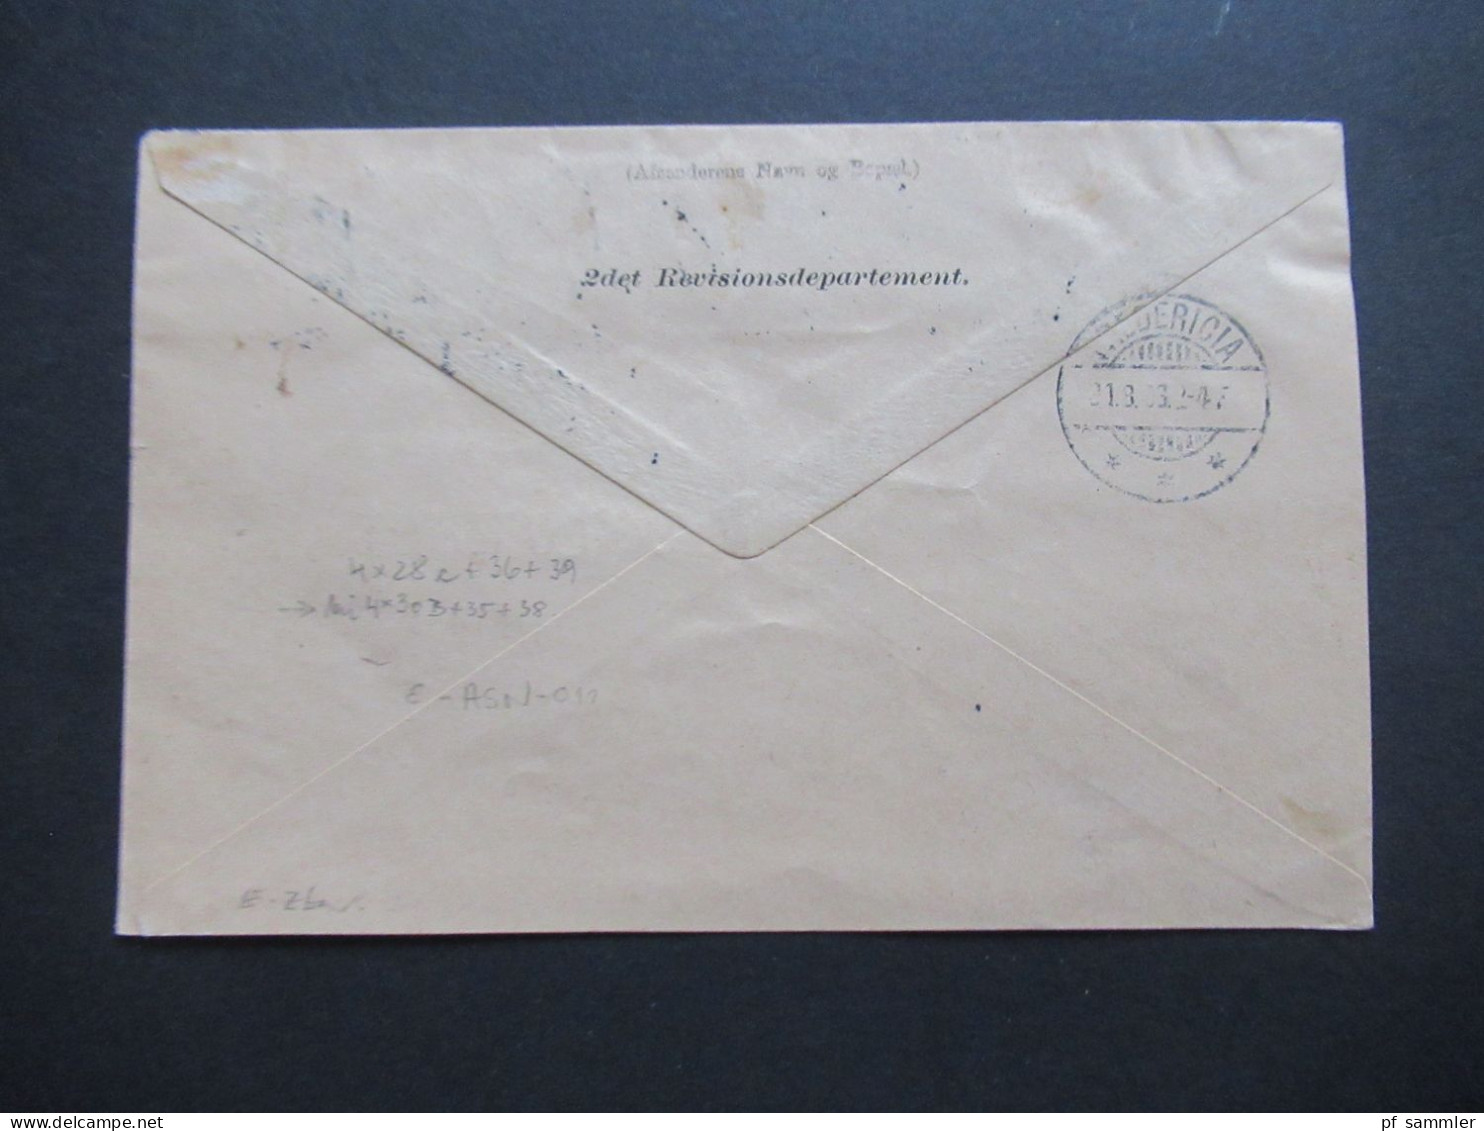 Dänemark 1903 Ziffern im Rahmen Paketkarte mit 4x 50 Öre als waagerechter 4er Streifen MiF